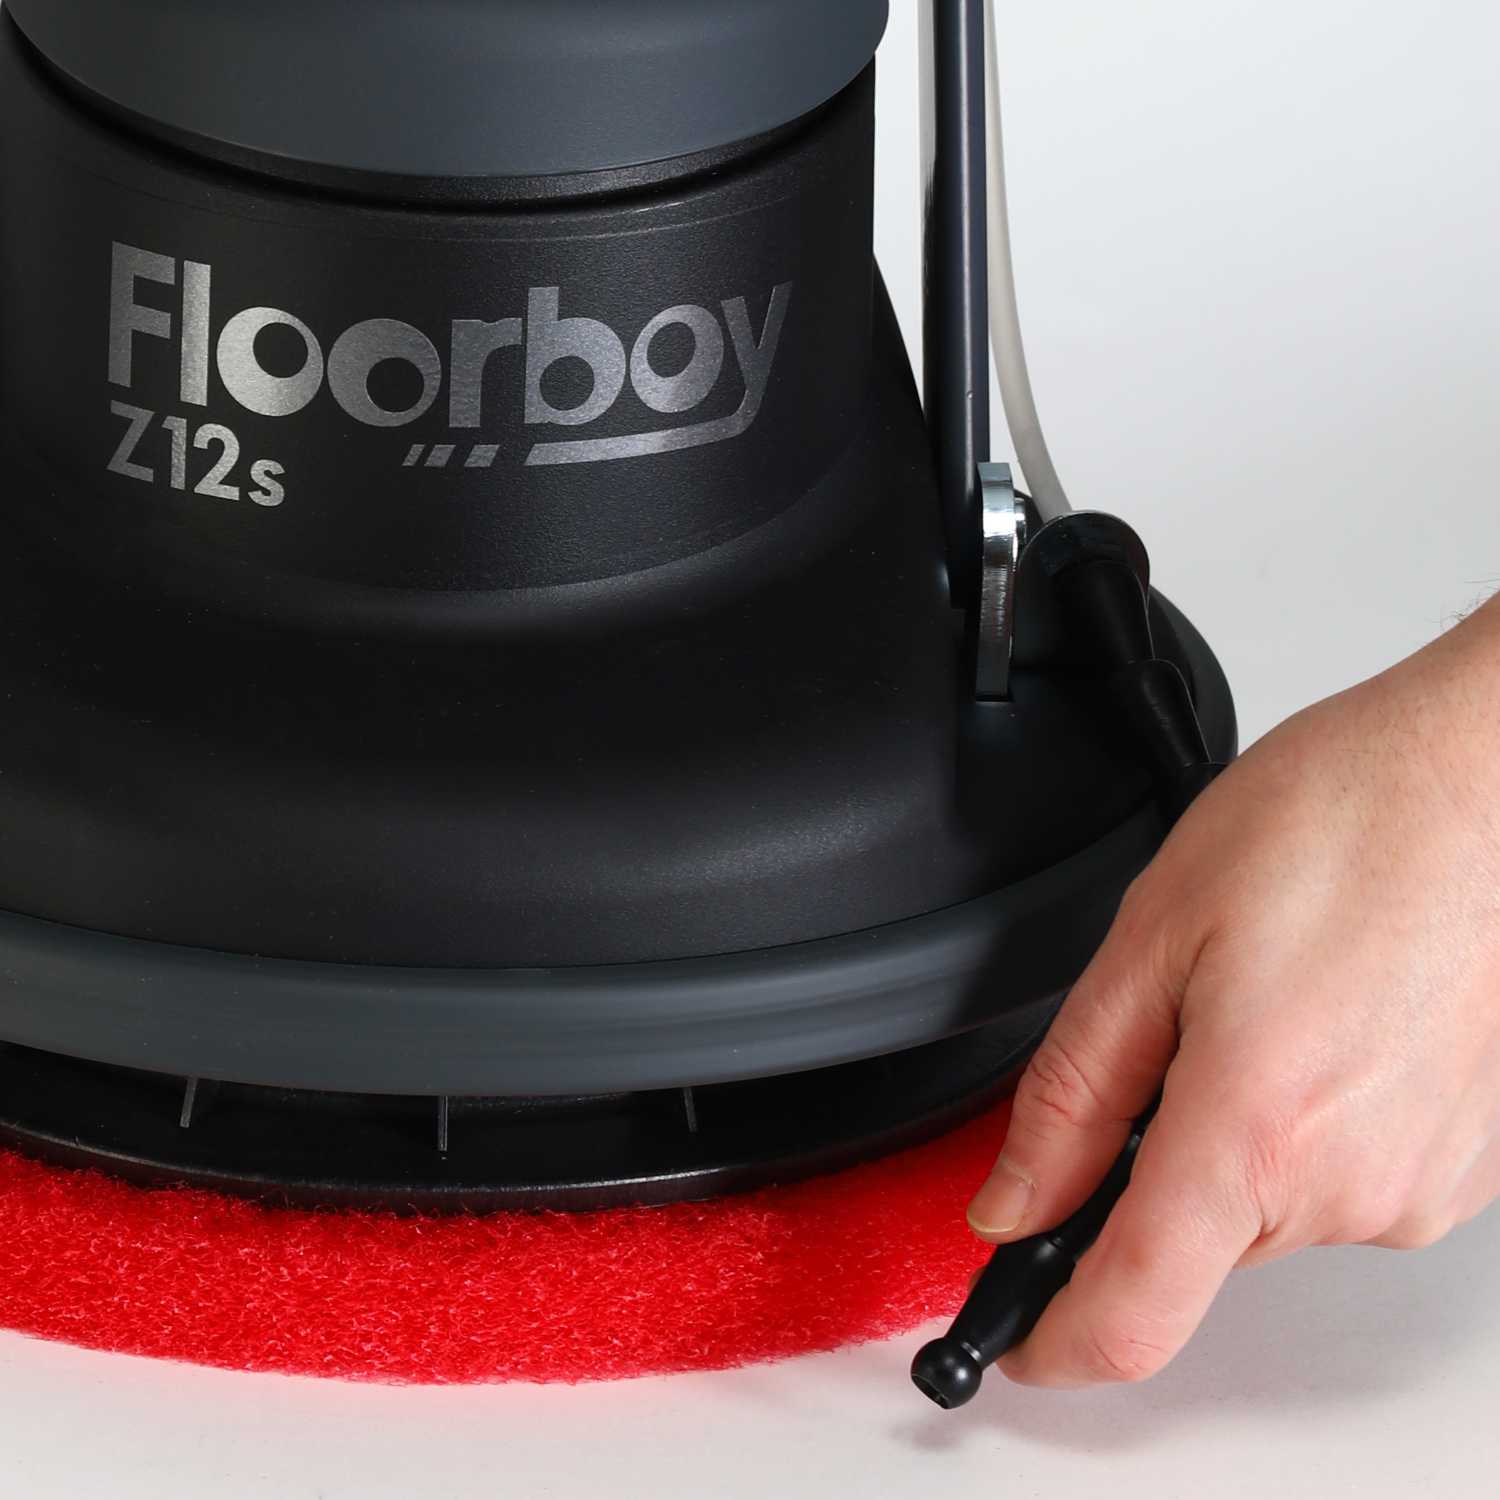 Floorboy Z12s Poliermaschine mit Tank und Treibteller von Cleanfix